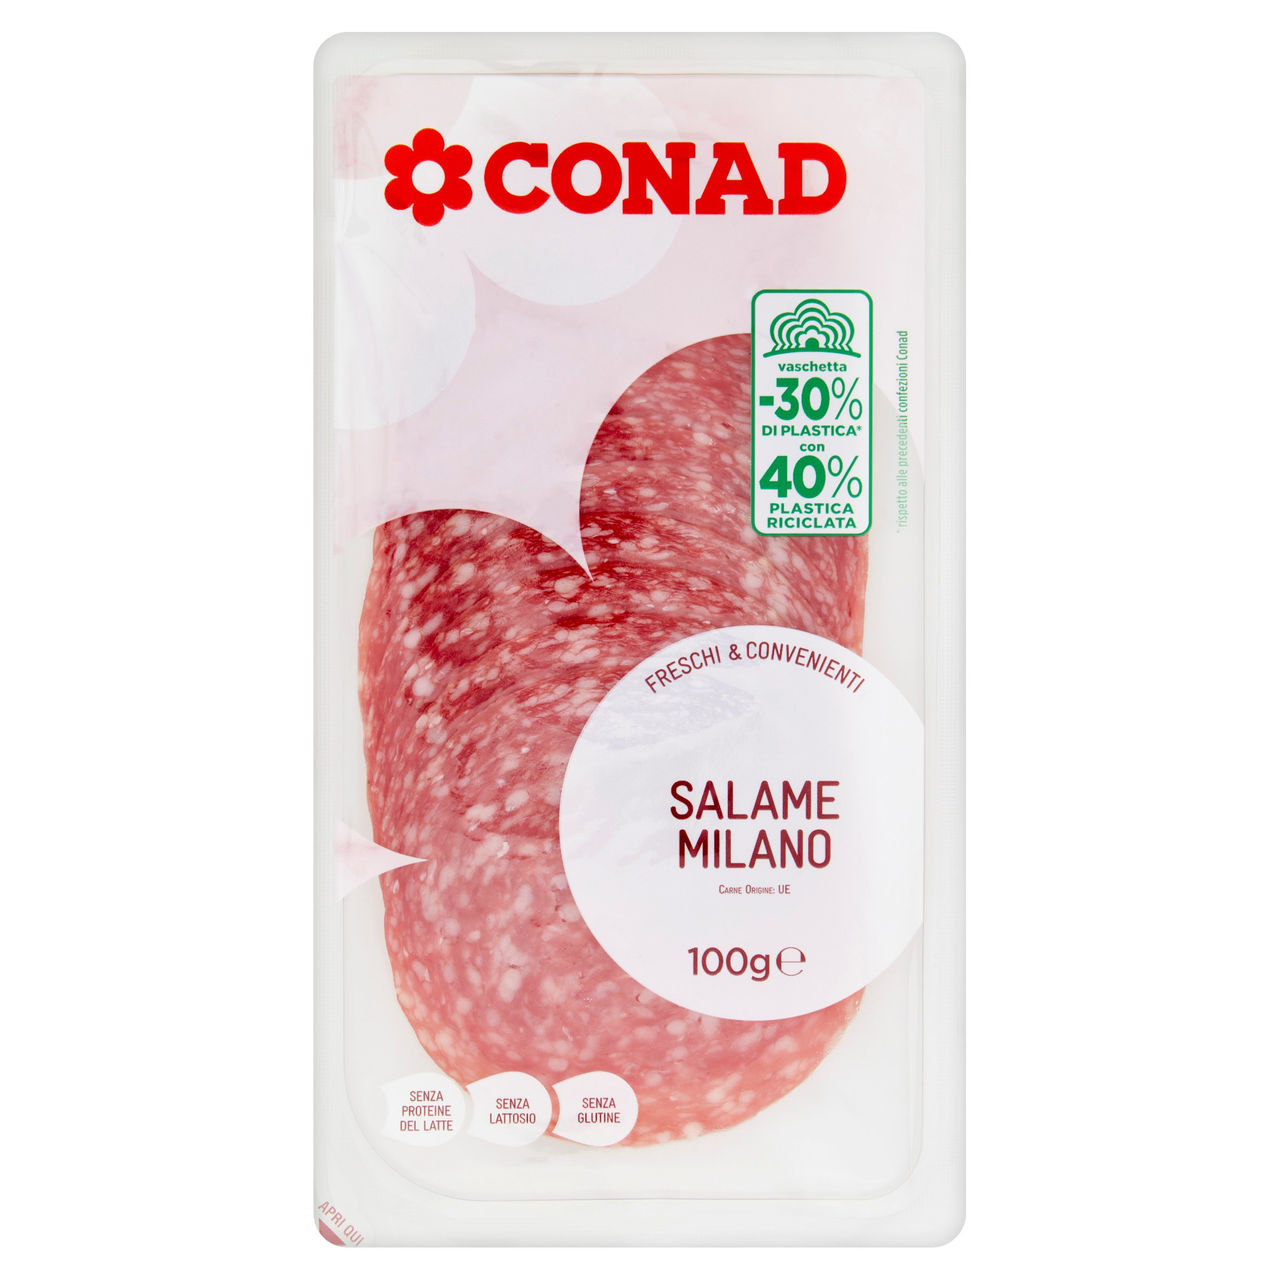 CONAD Freschi & Convenienti Salame Milano 100 g